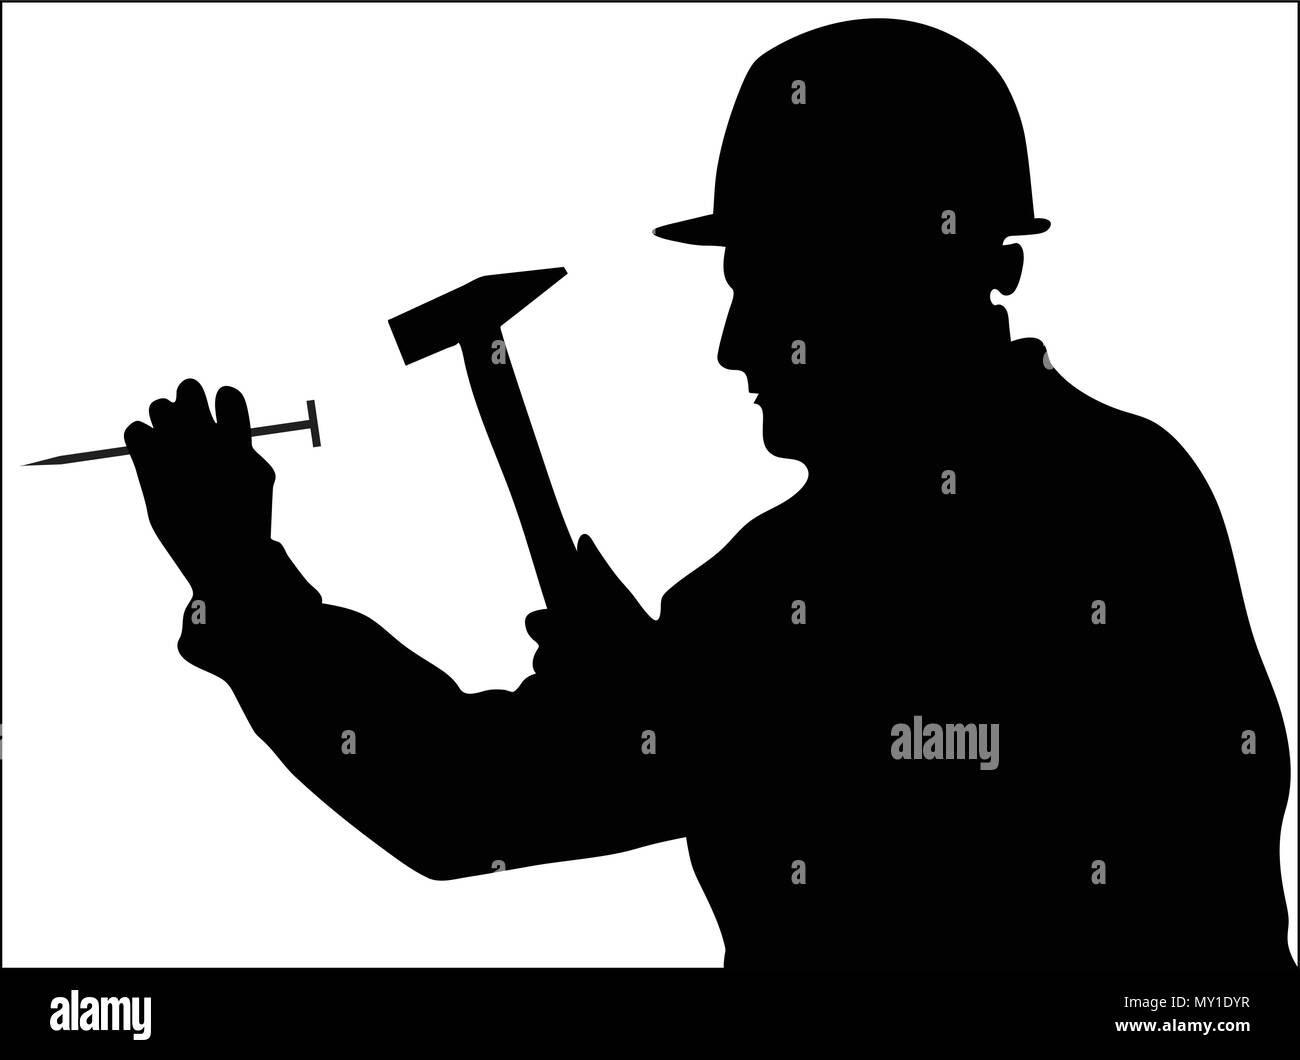 L'homme se sert d'un marteau pour frapper un clou vector silhouettes Illustration de Vecteur